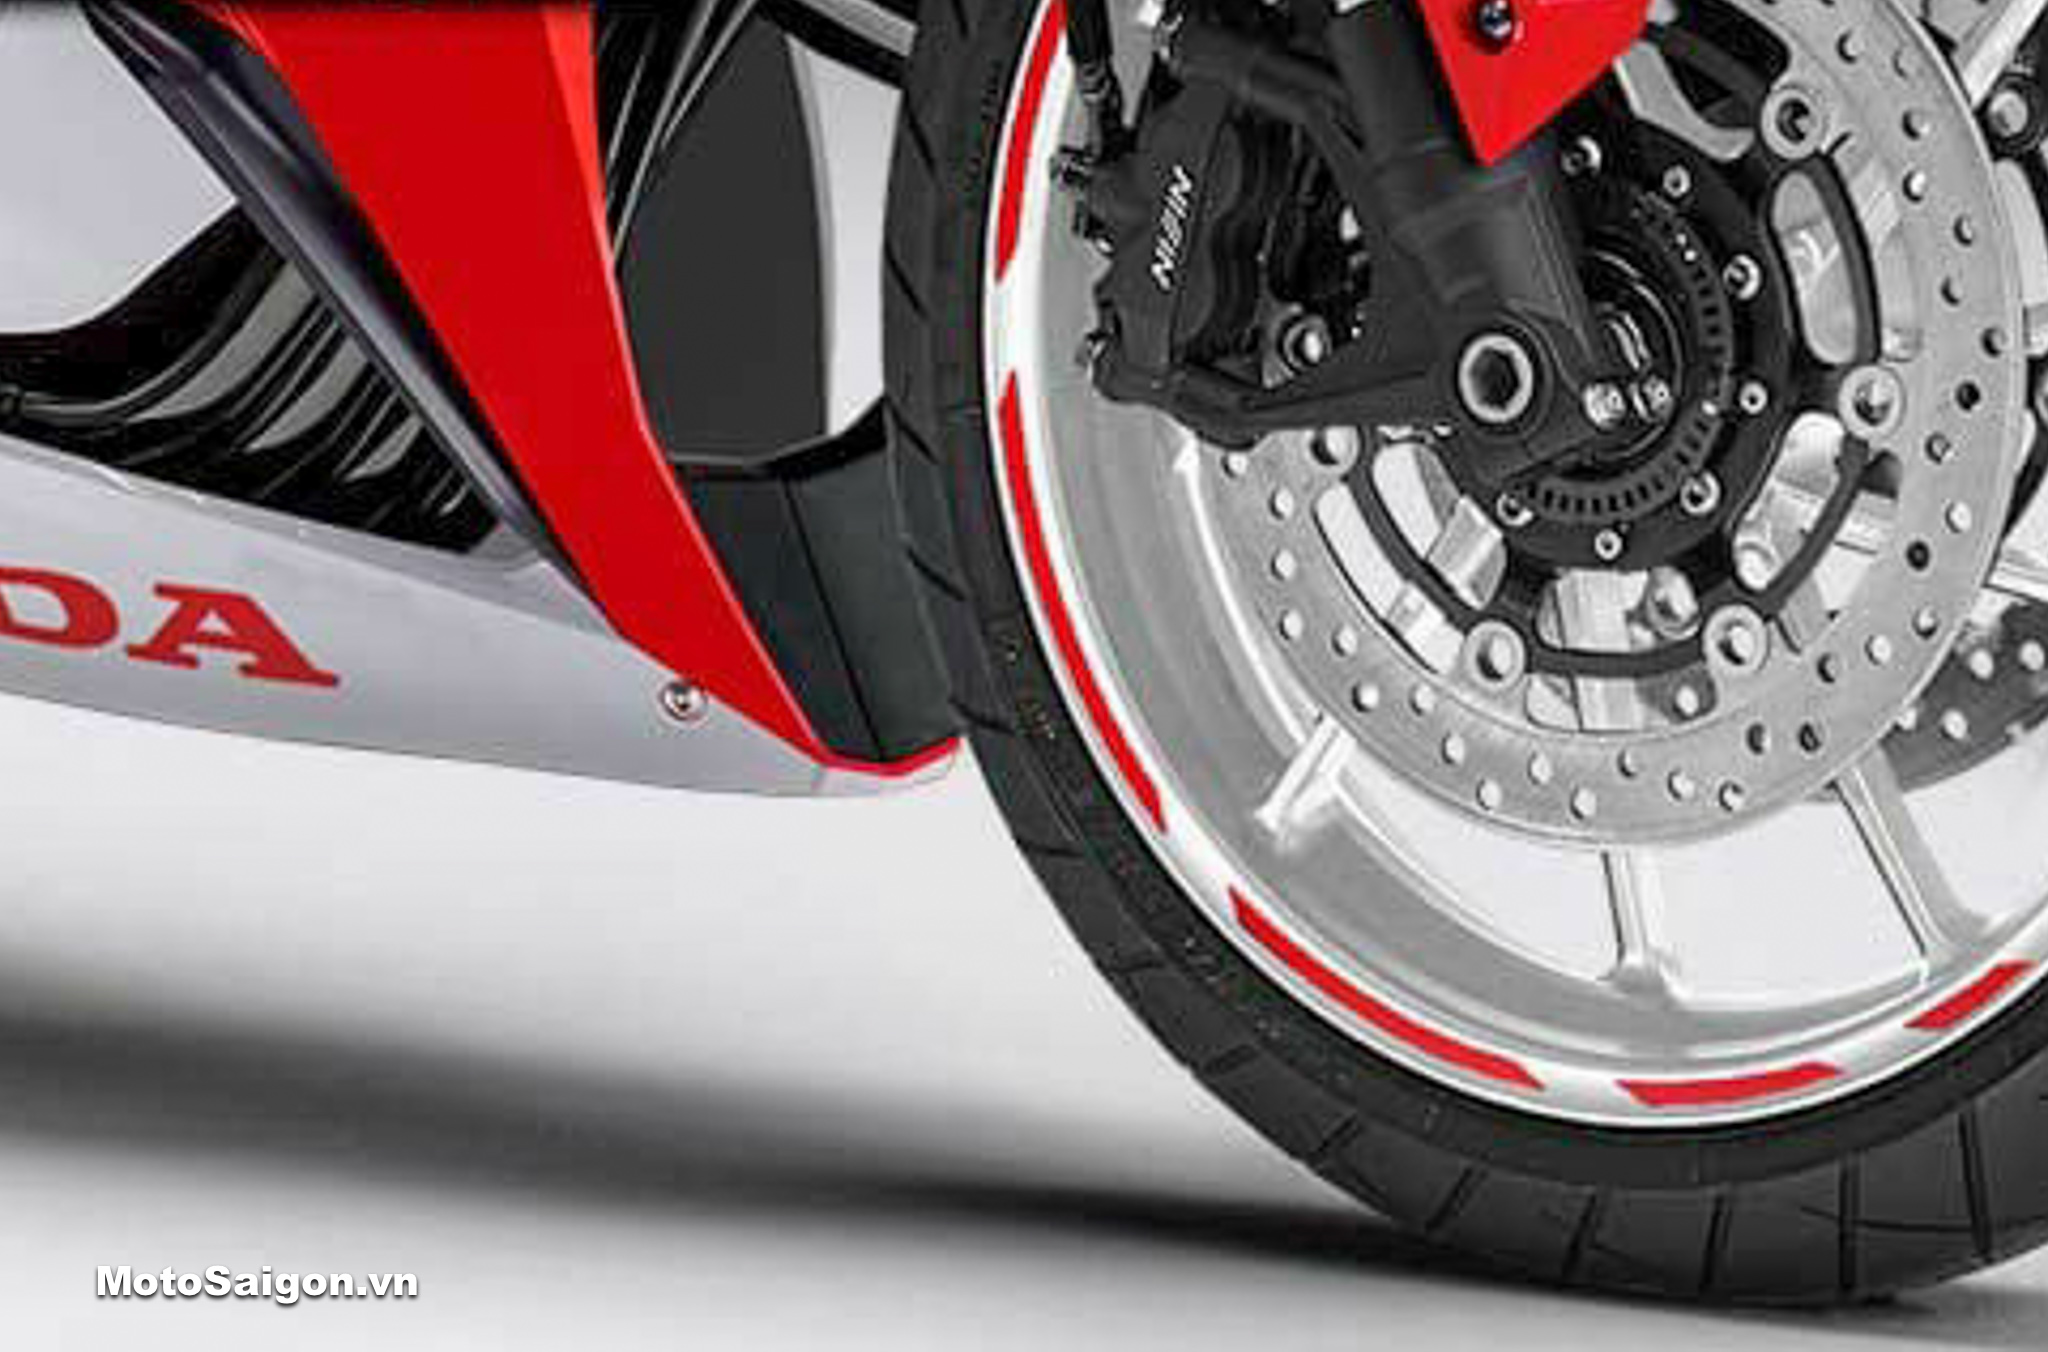 Huyền thoại Honda CB400 Super Four bản đặc biệt 2017 giá hơn 300 triệu Đồng